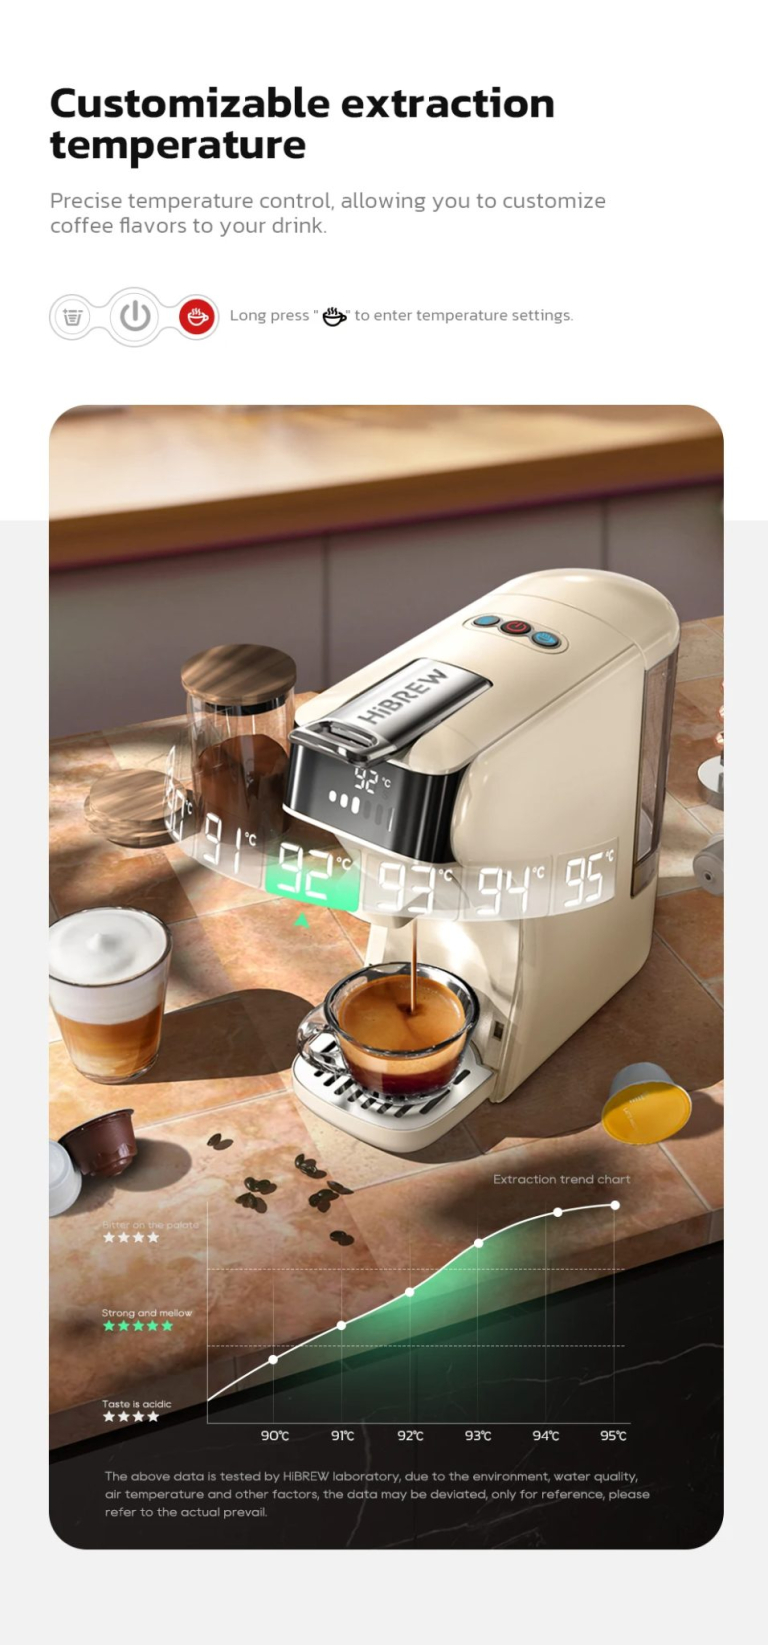 Itt az új HiBrew kávéfőző, ami egy 6 az 1-ben gép lett 4